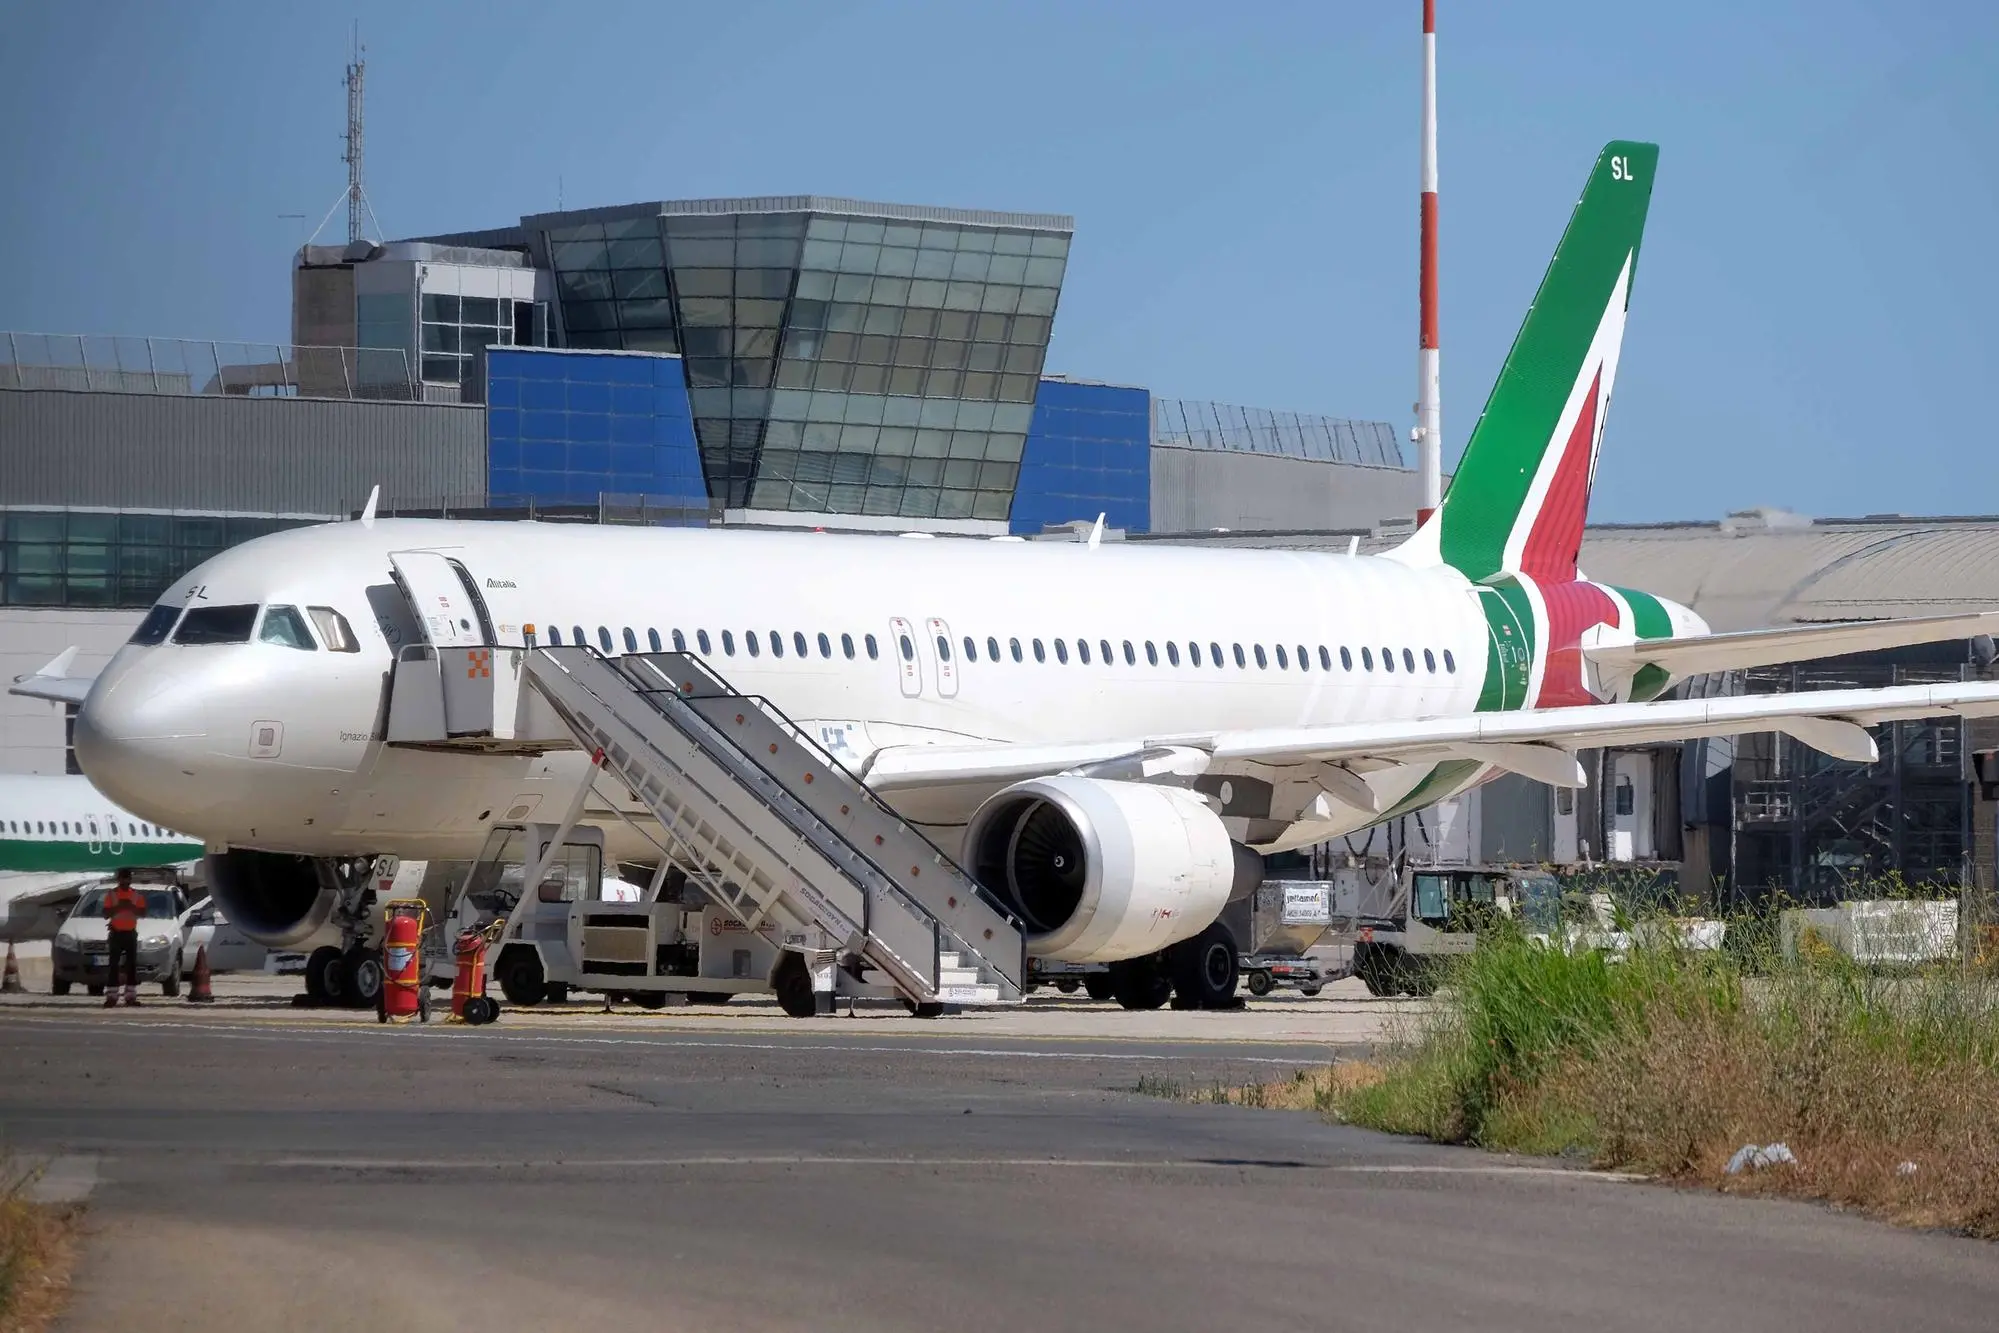 Un aereo col marchio Alitalia